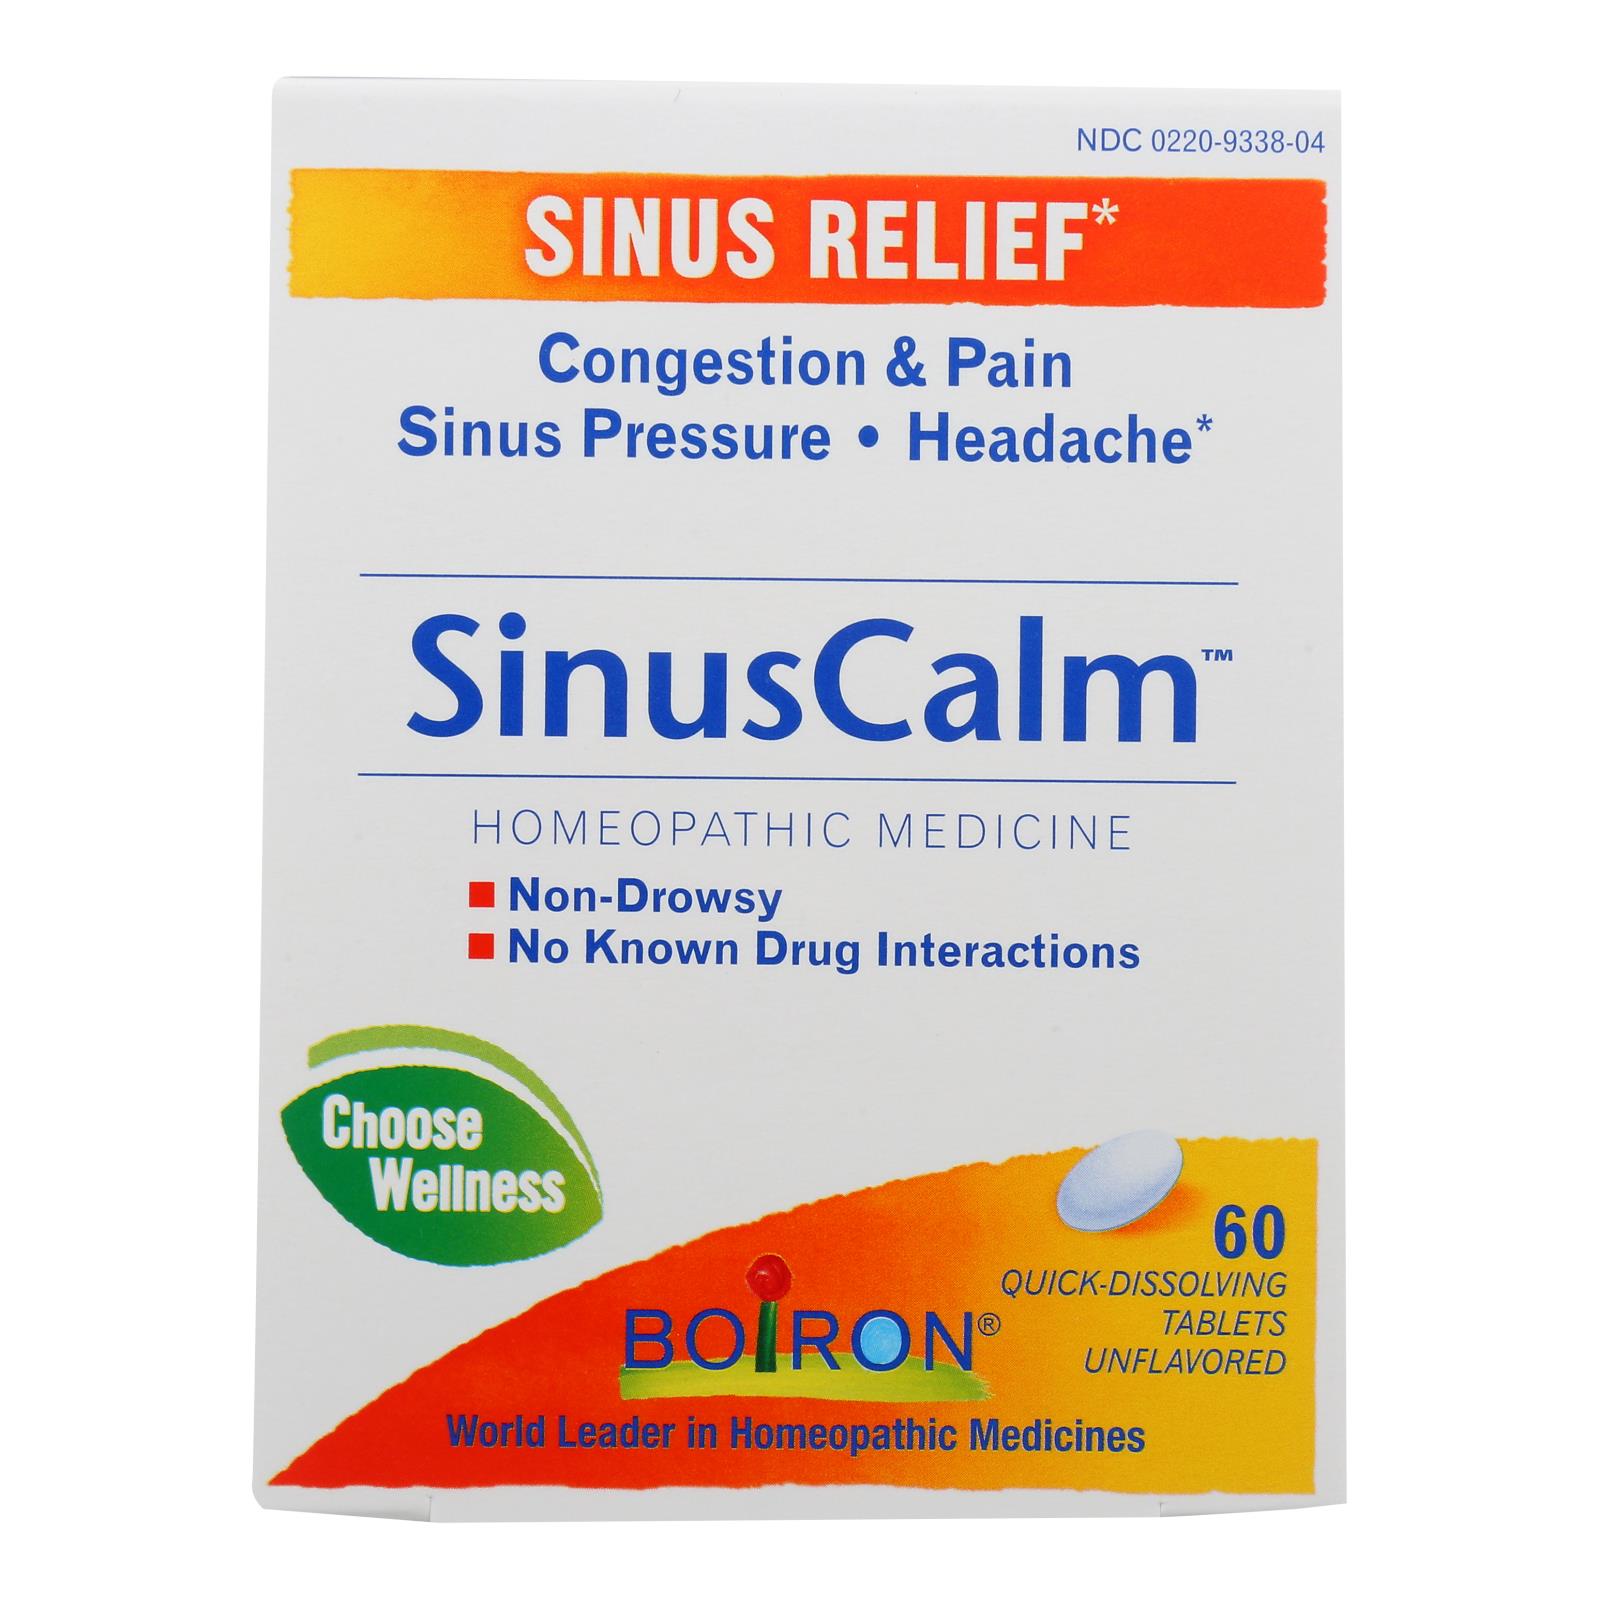 Boiron - Sinus Calm Sinus Relief - 1 Each - 60 TAB